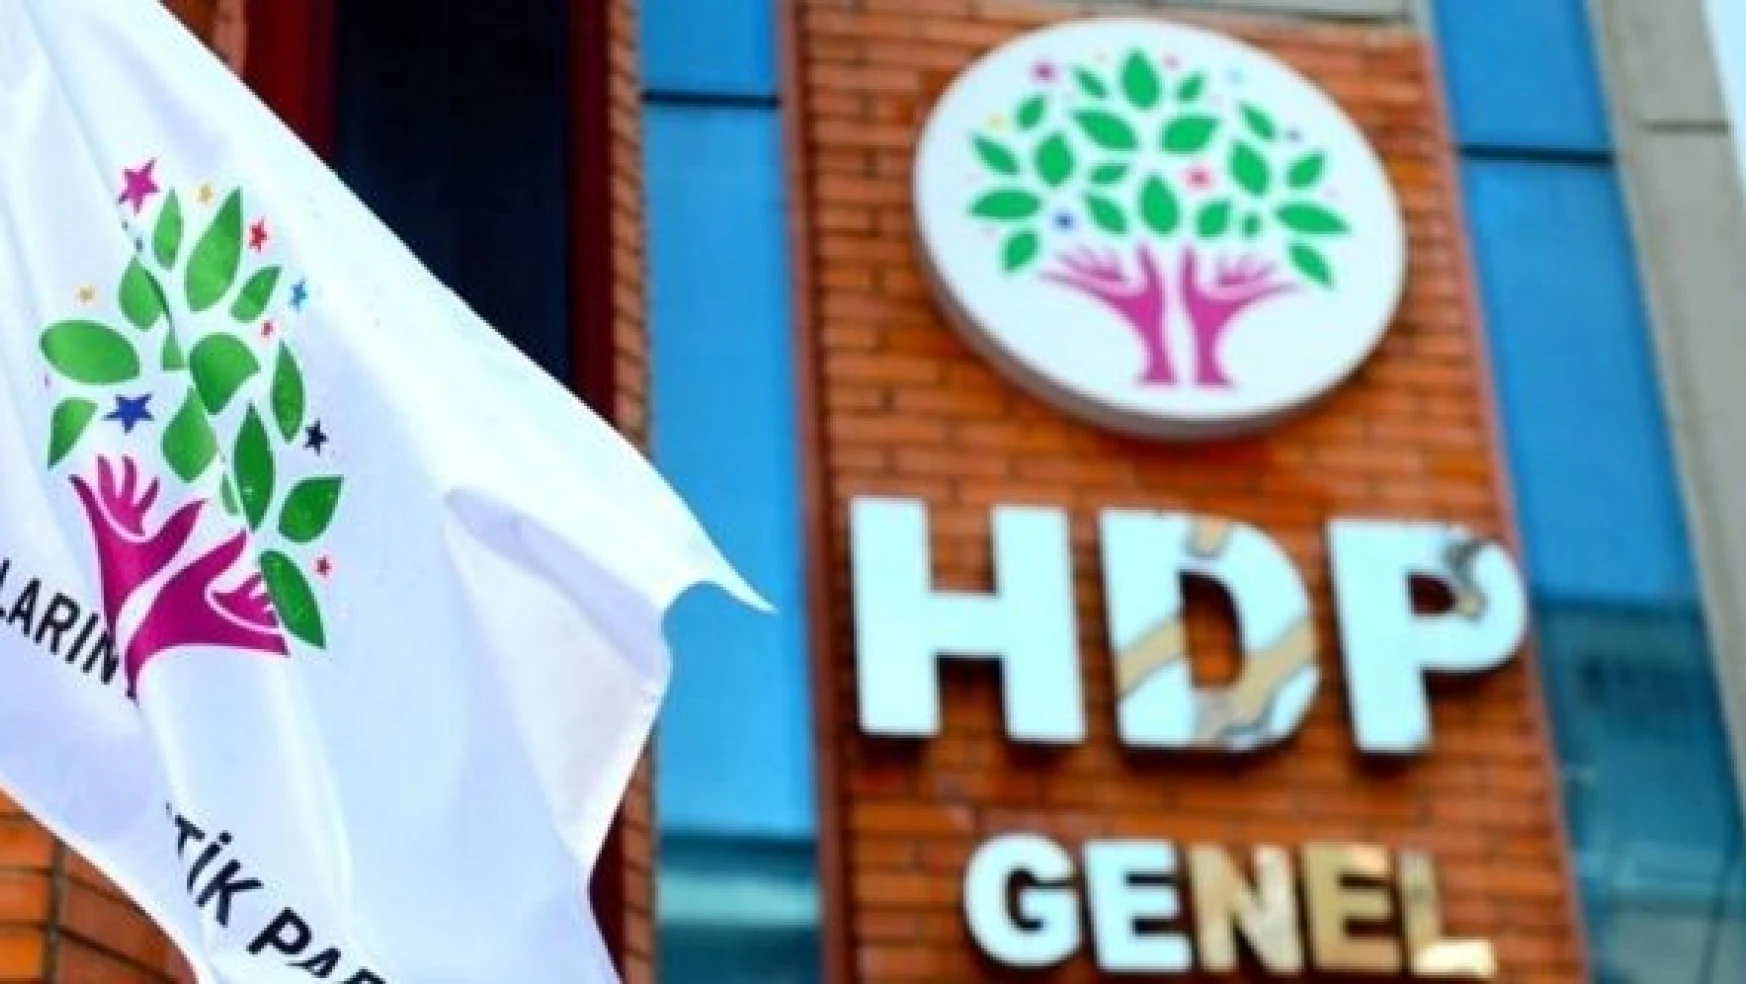 HDP'nin hesaplarına tedbiren bloke konuldu